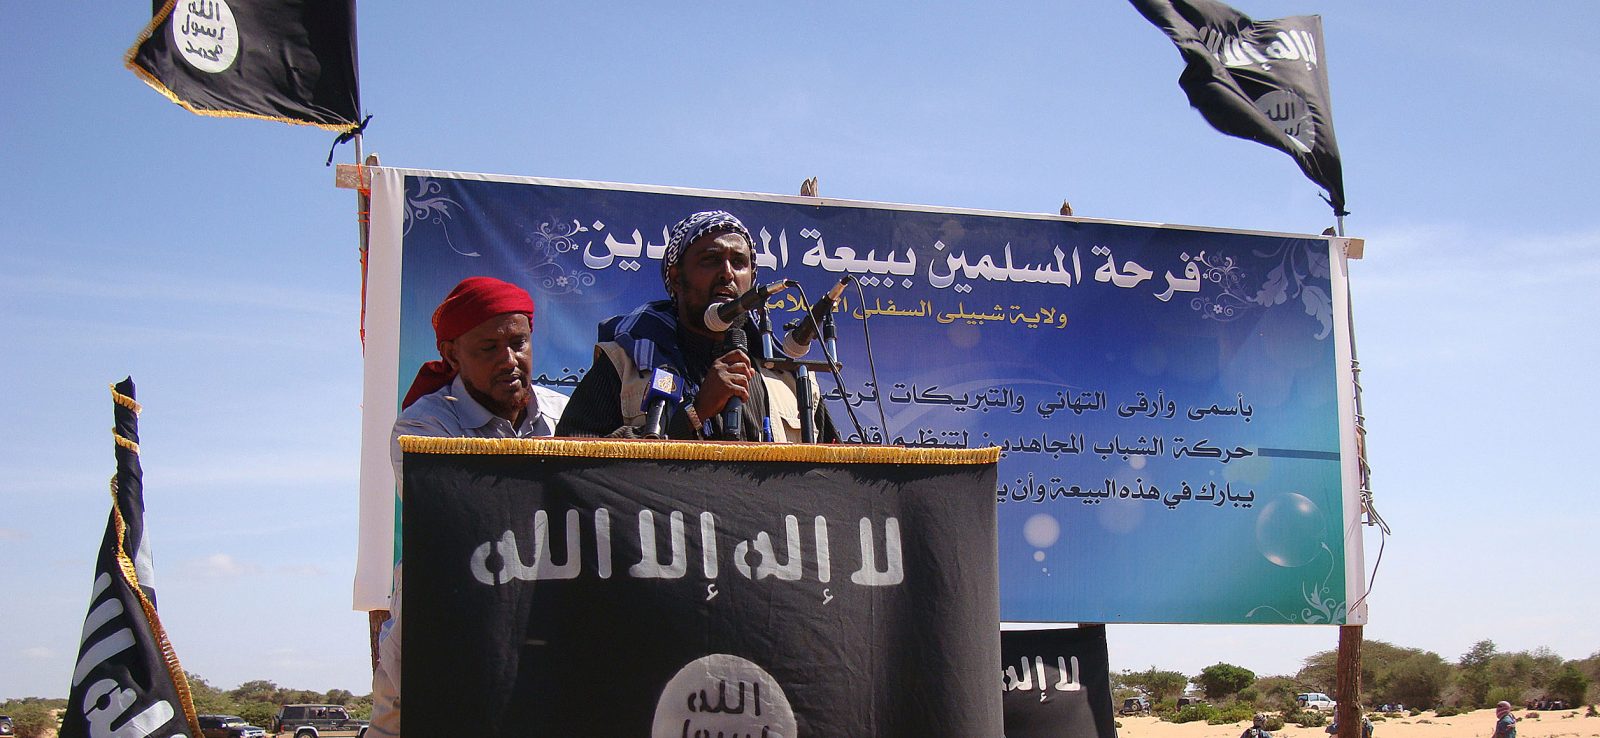 Al-Shabaab – man giving speech at podium